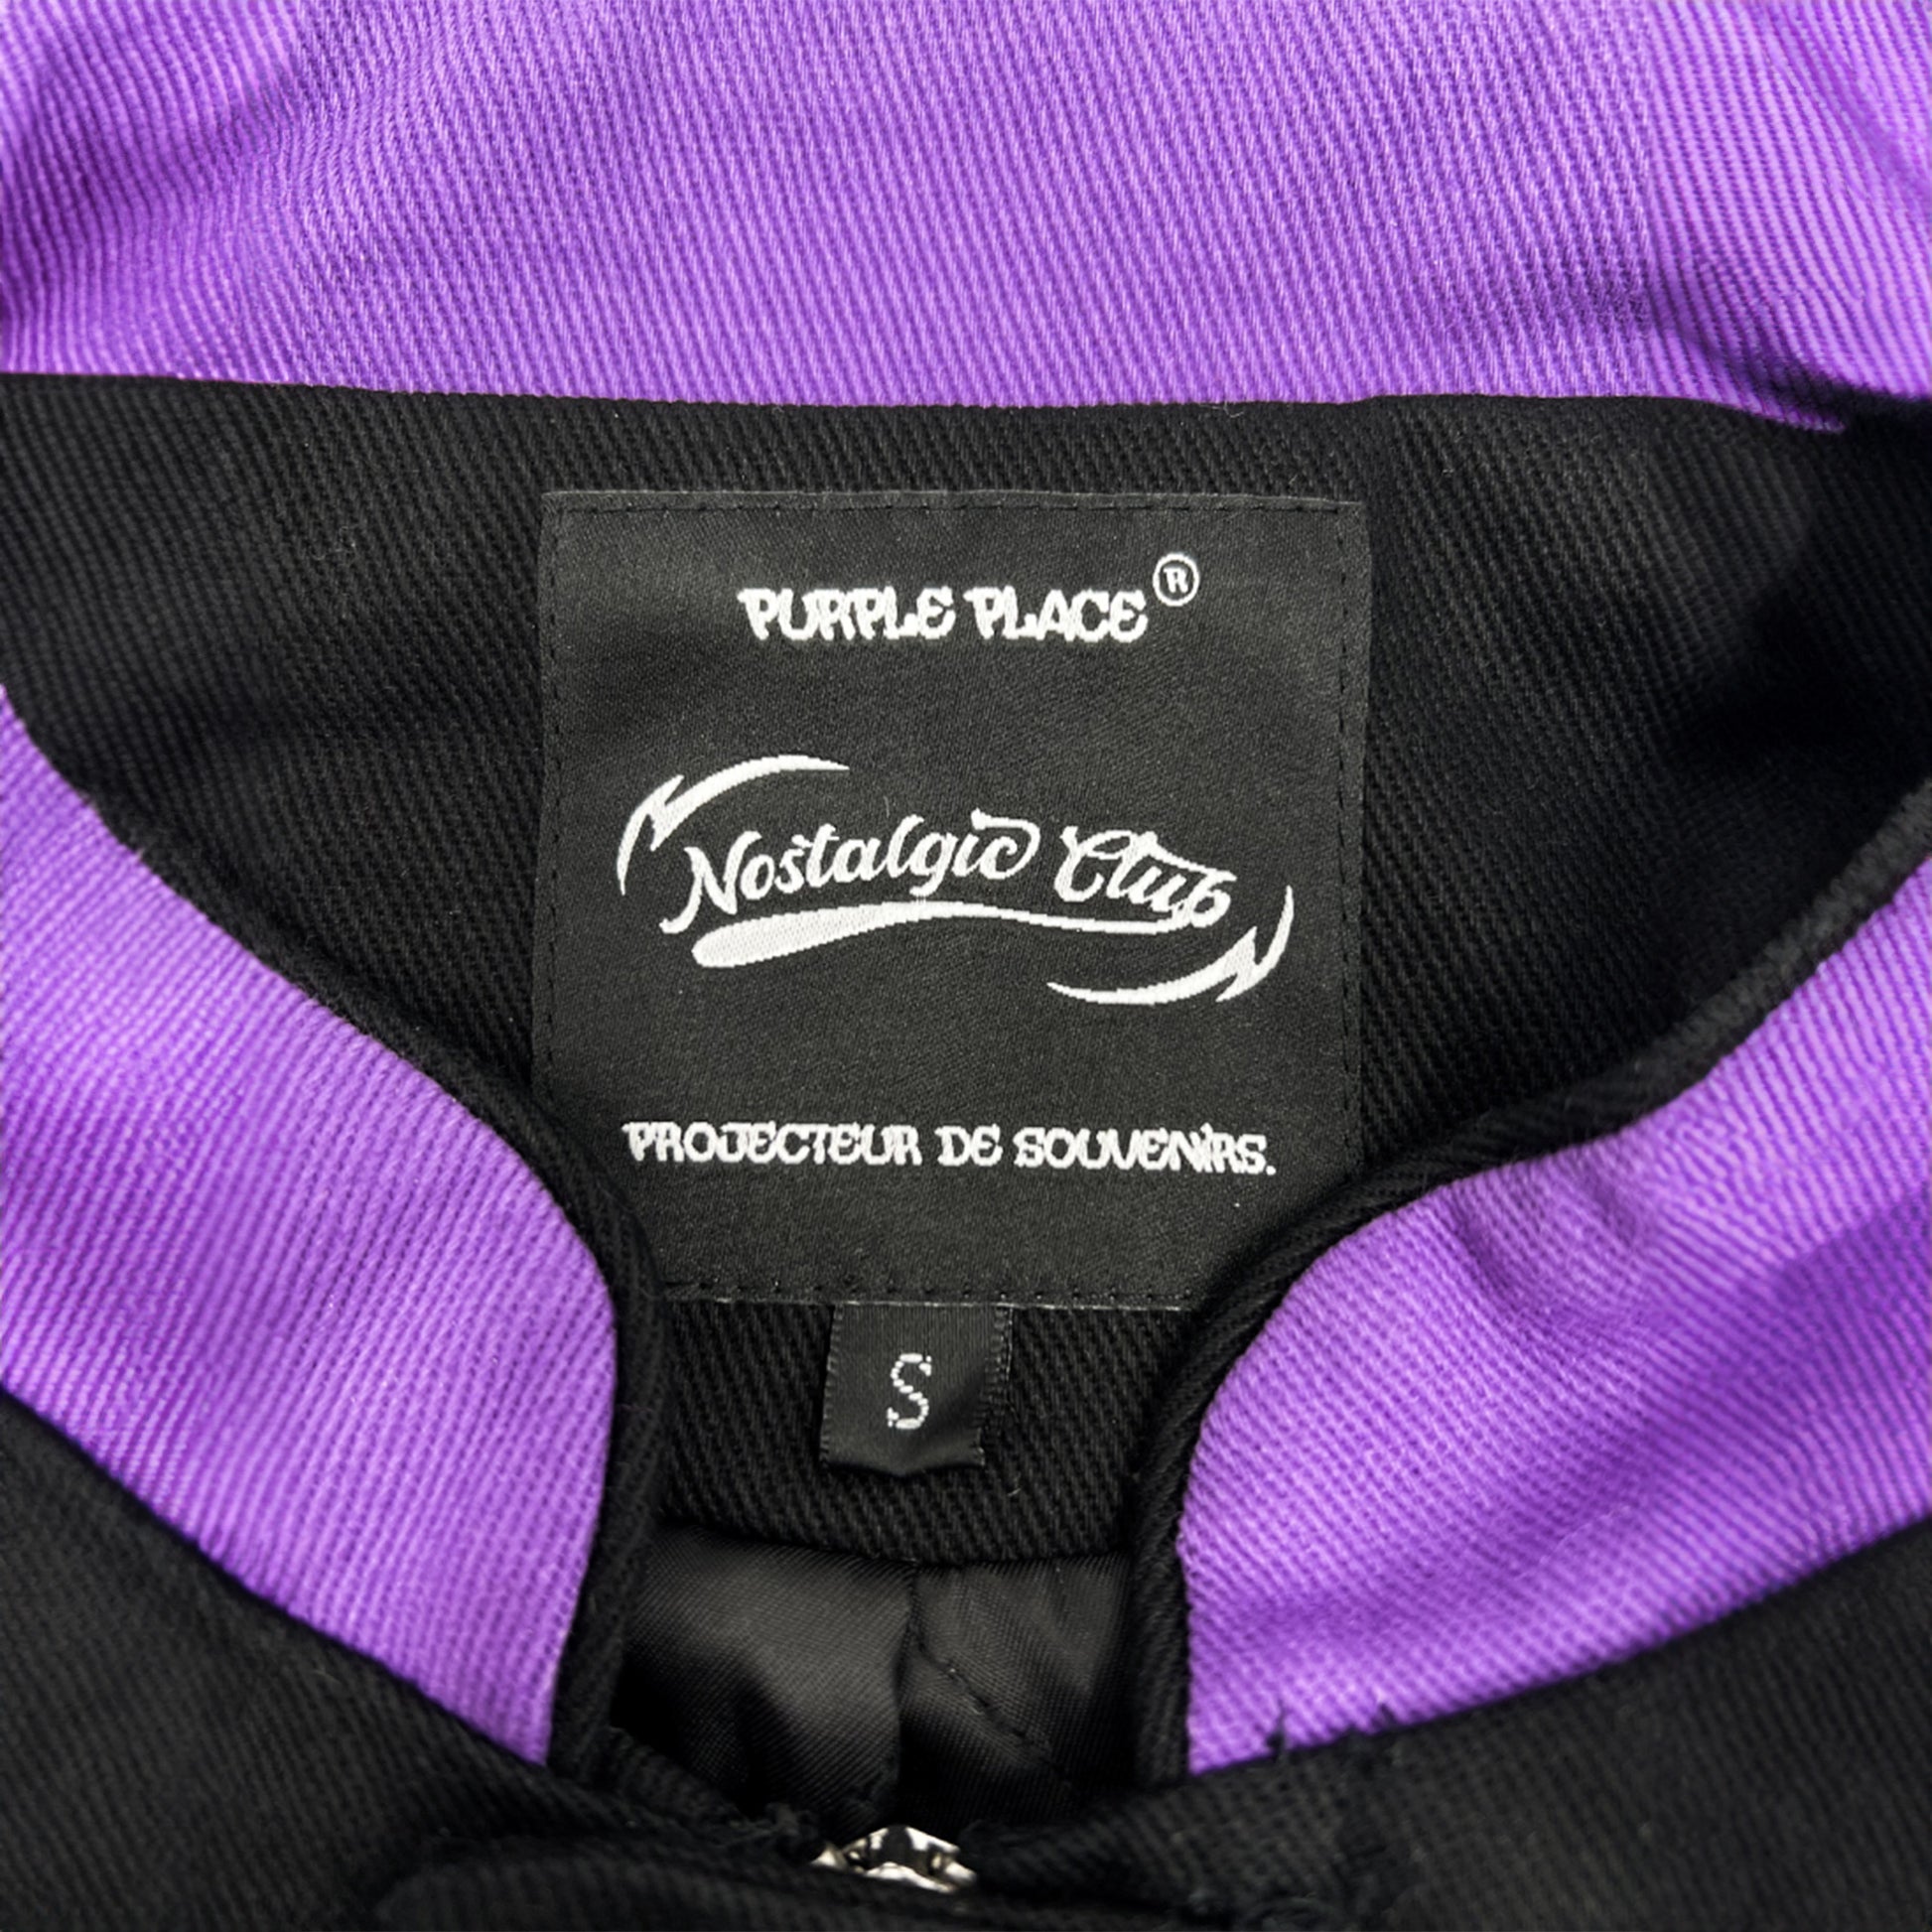 purple-place-jacket-racing-nostalgic-club-detail-etiquette